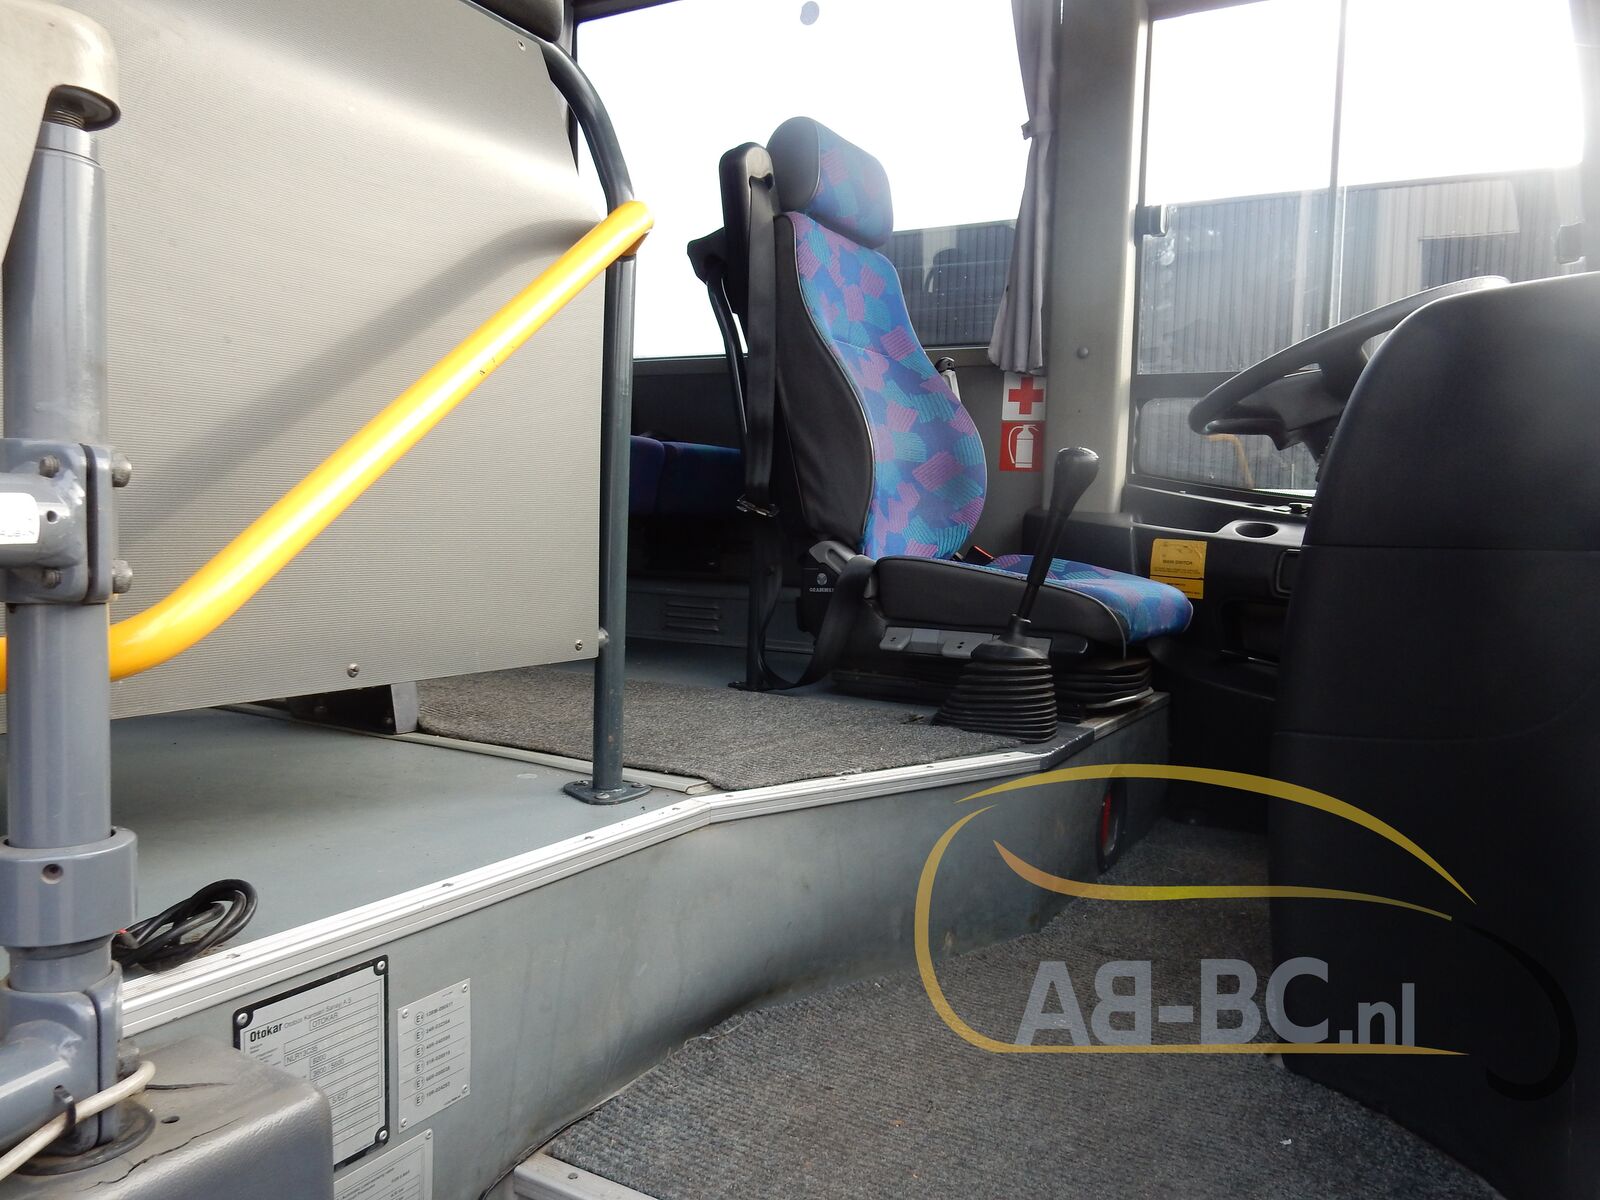 coach-bus-OTOKAR-Navigo-28-Seats---1636639347271943424_orig_50e0f1f502c397e5d9fef86a6044f484--21111115533115941900